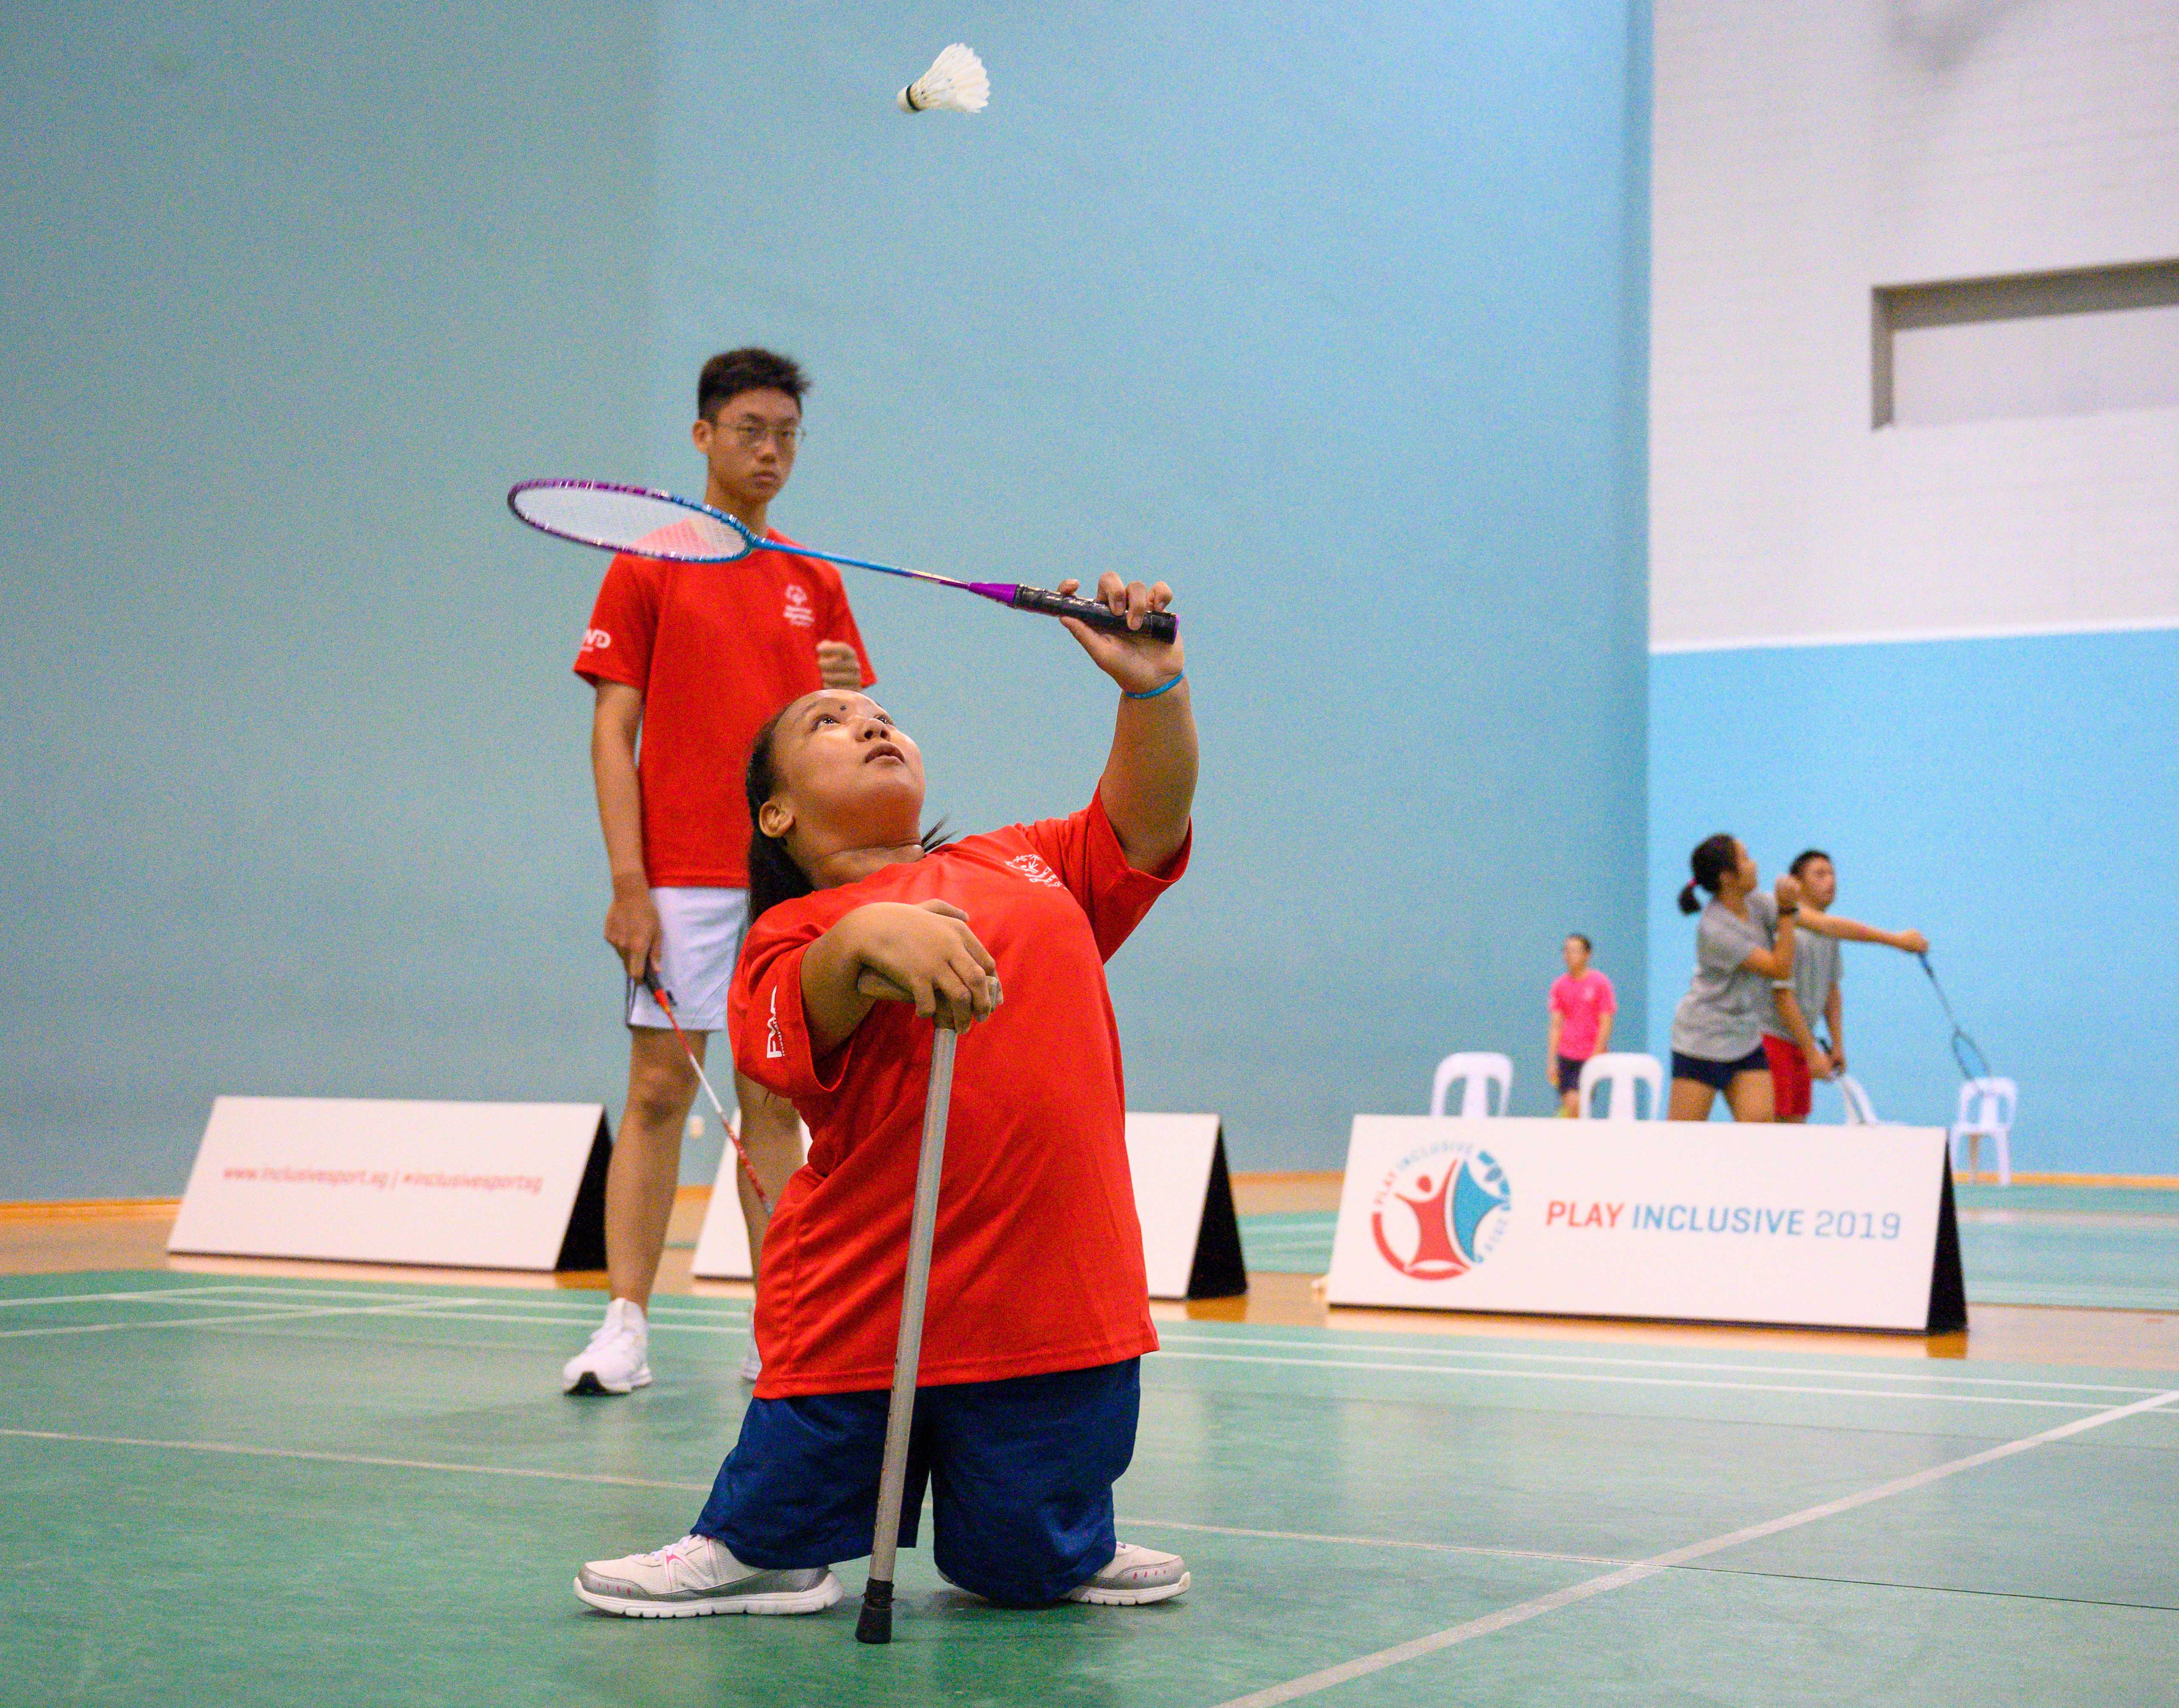 Play Inclusive Badminton